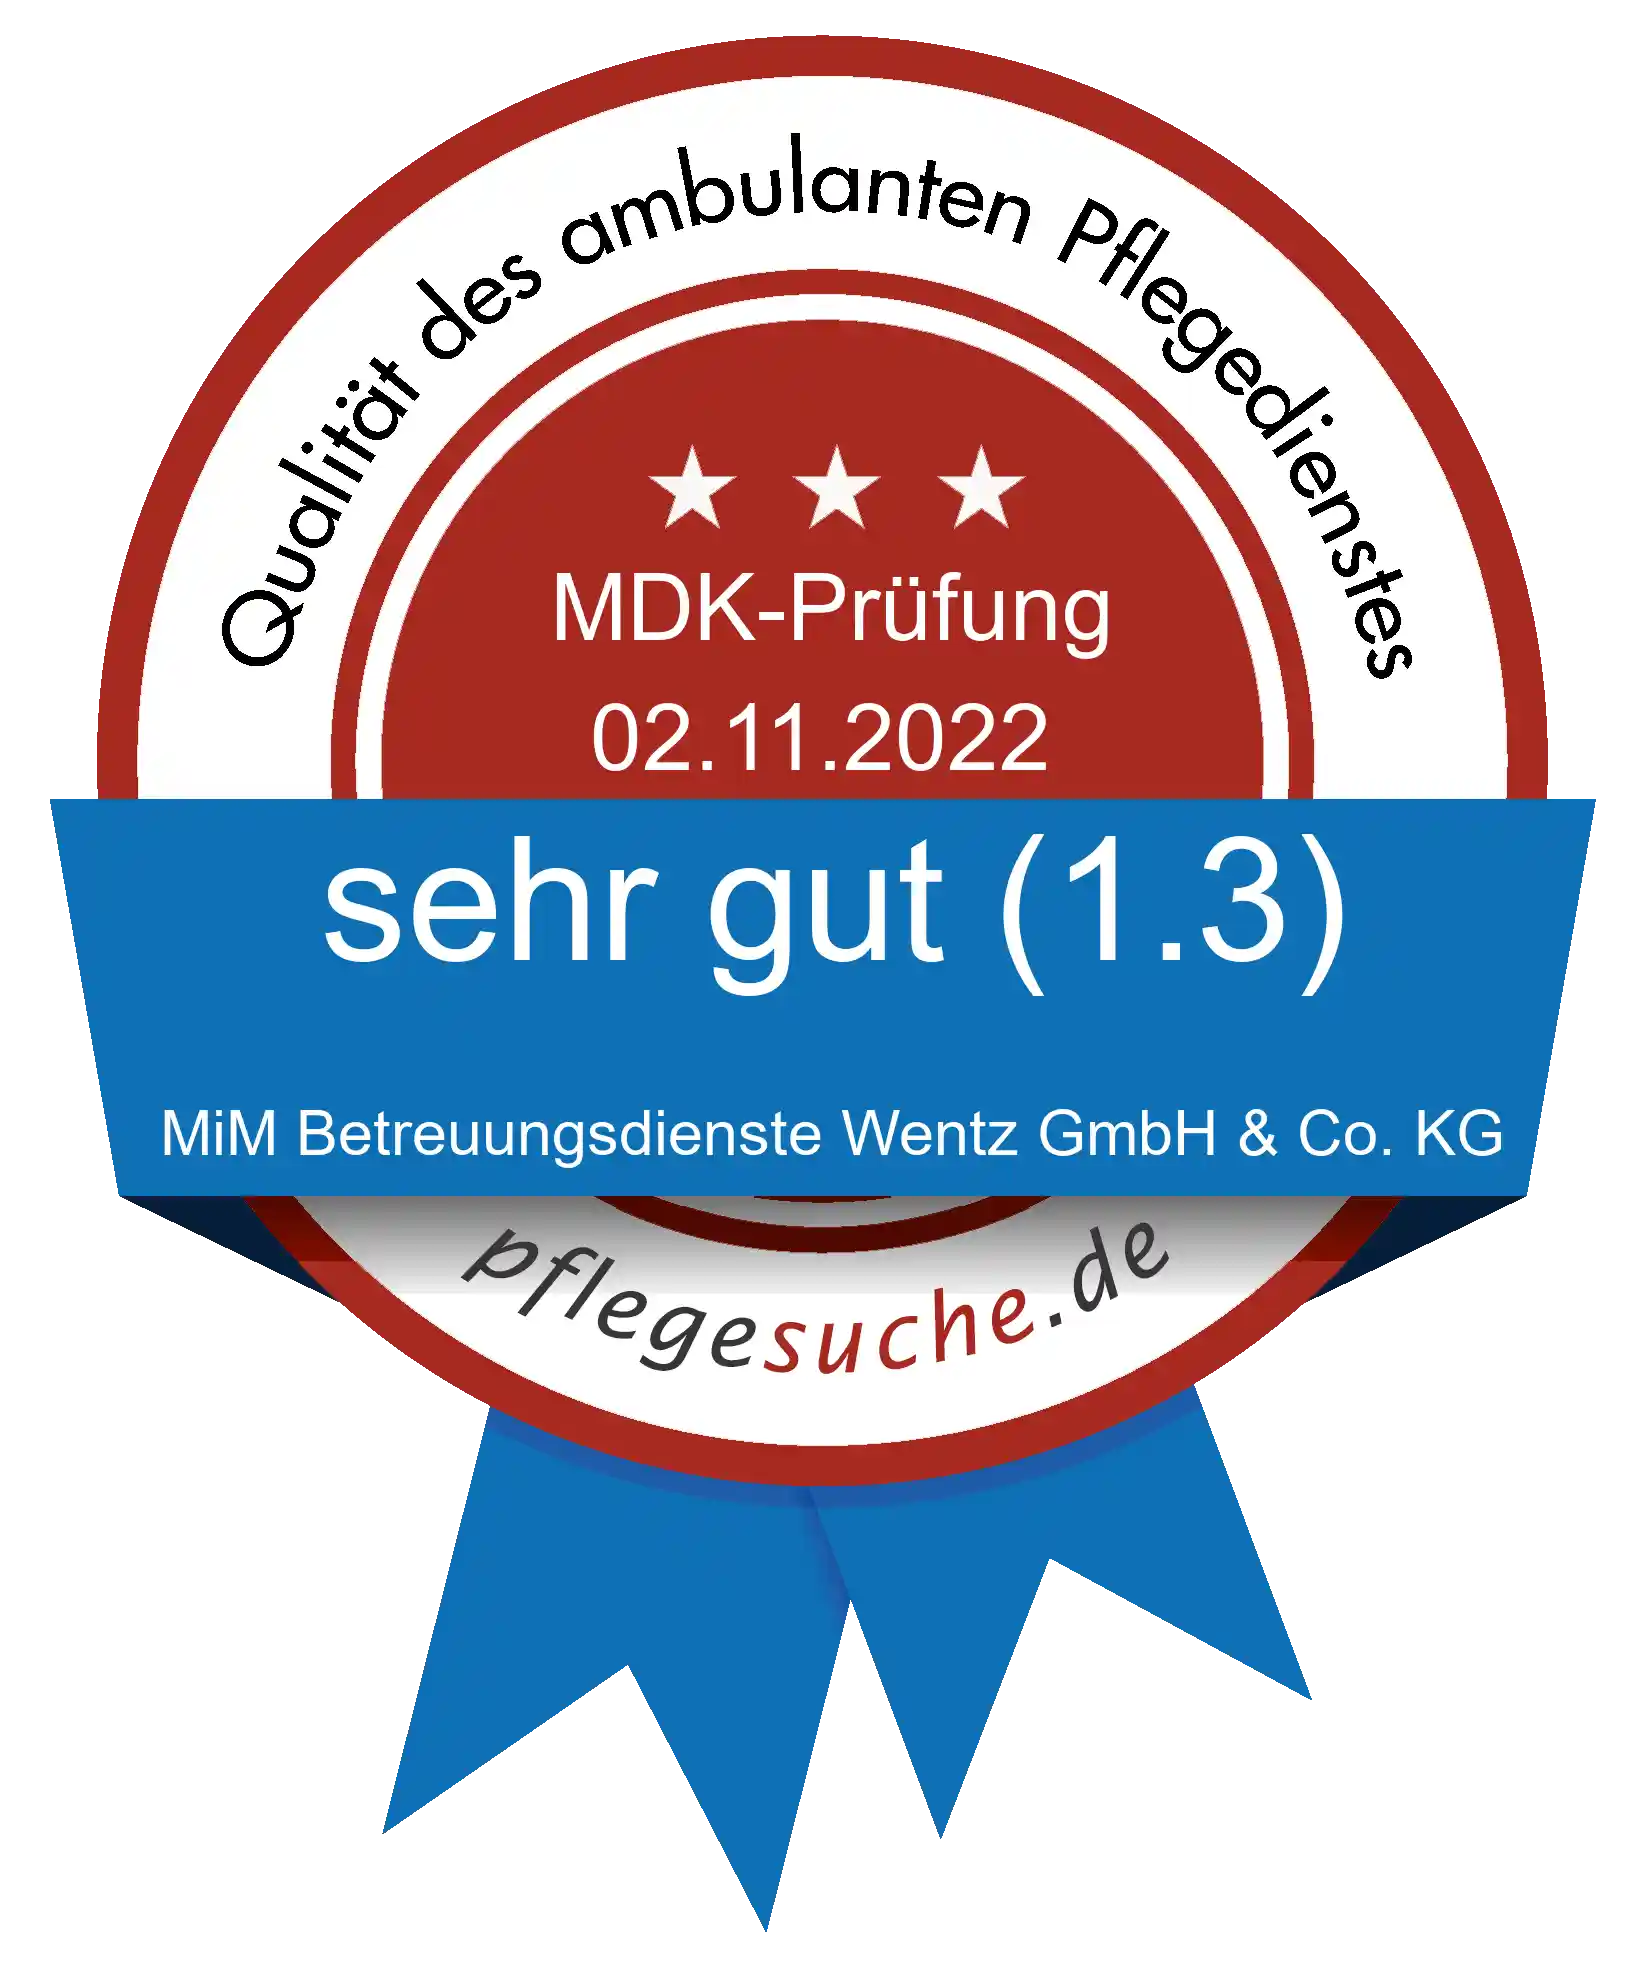 Siegel Benotung: MiM Betreuungsdienste Wentz GmbH & Co. KG